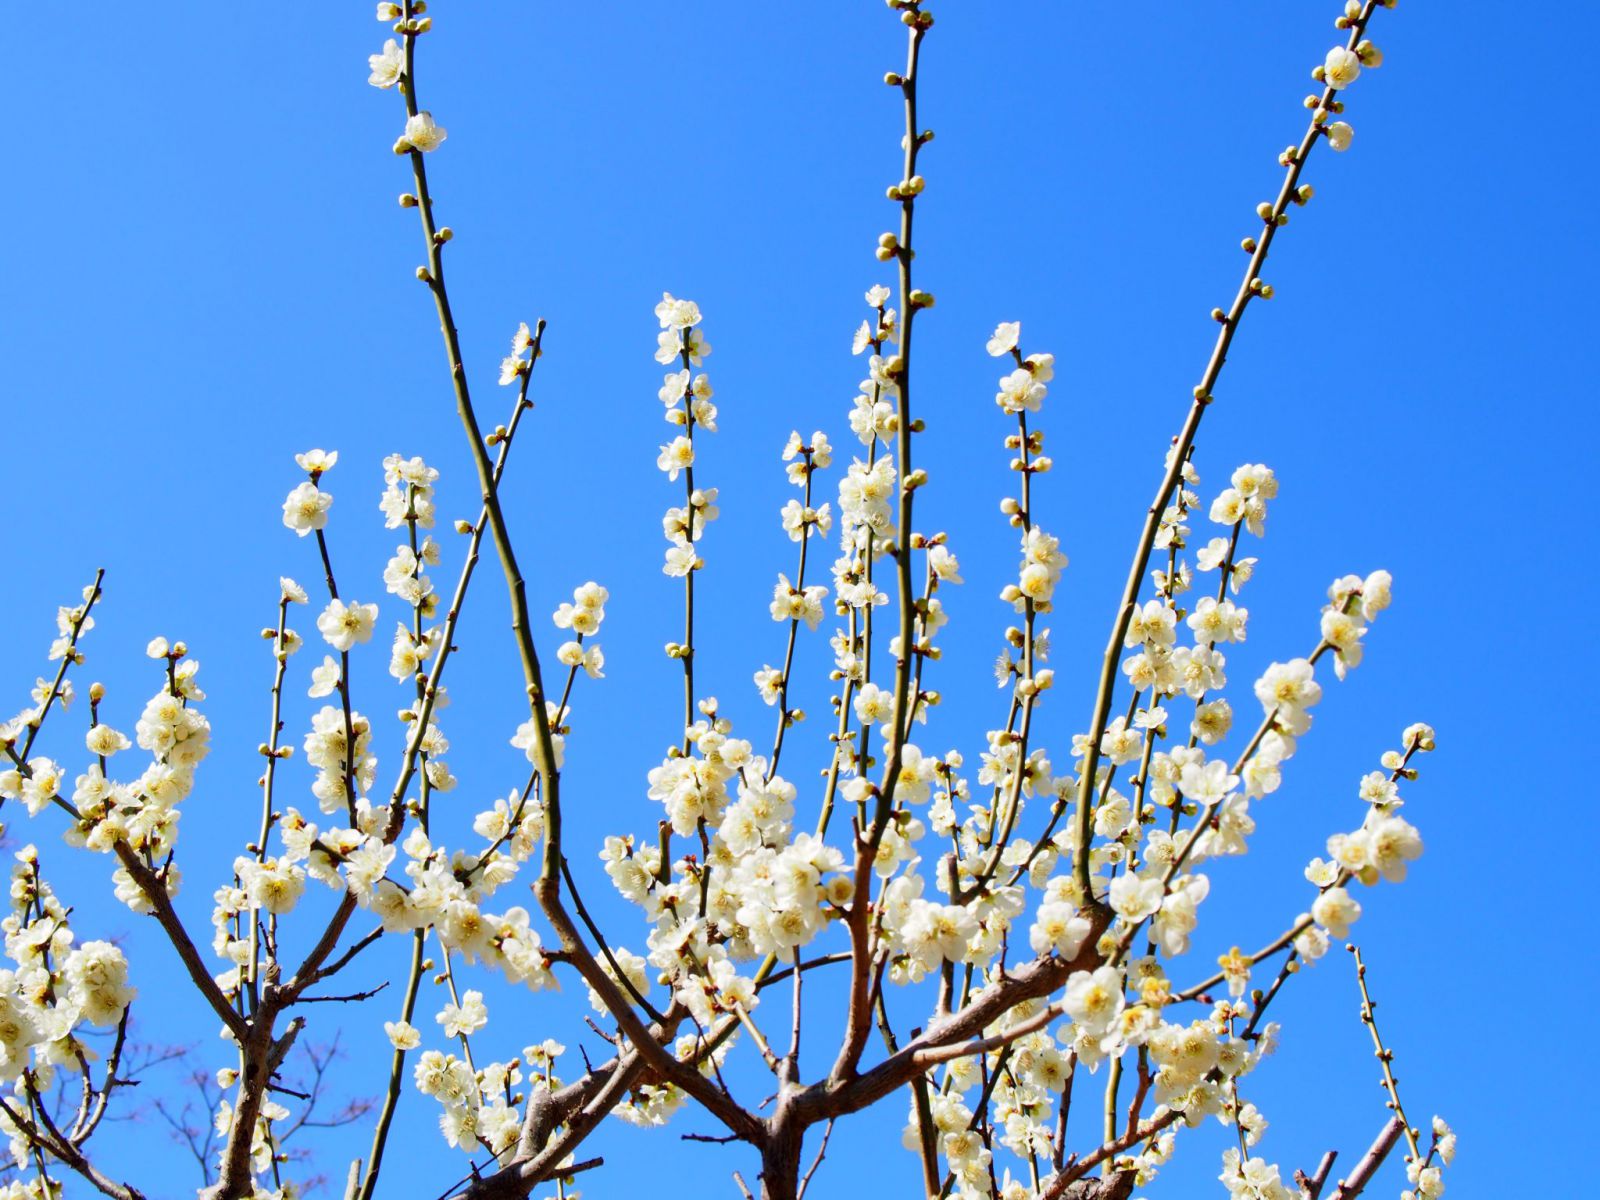 片岡梅林 奈良公園内随一の 梅の名所 では紅白色とりどりの梅が咲き誇る 奈良まちあるき風景紀行